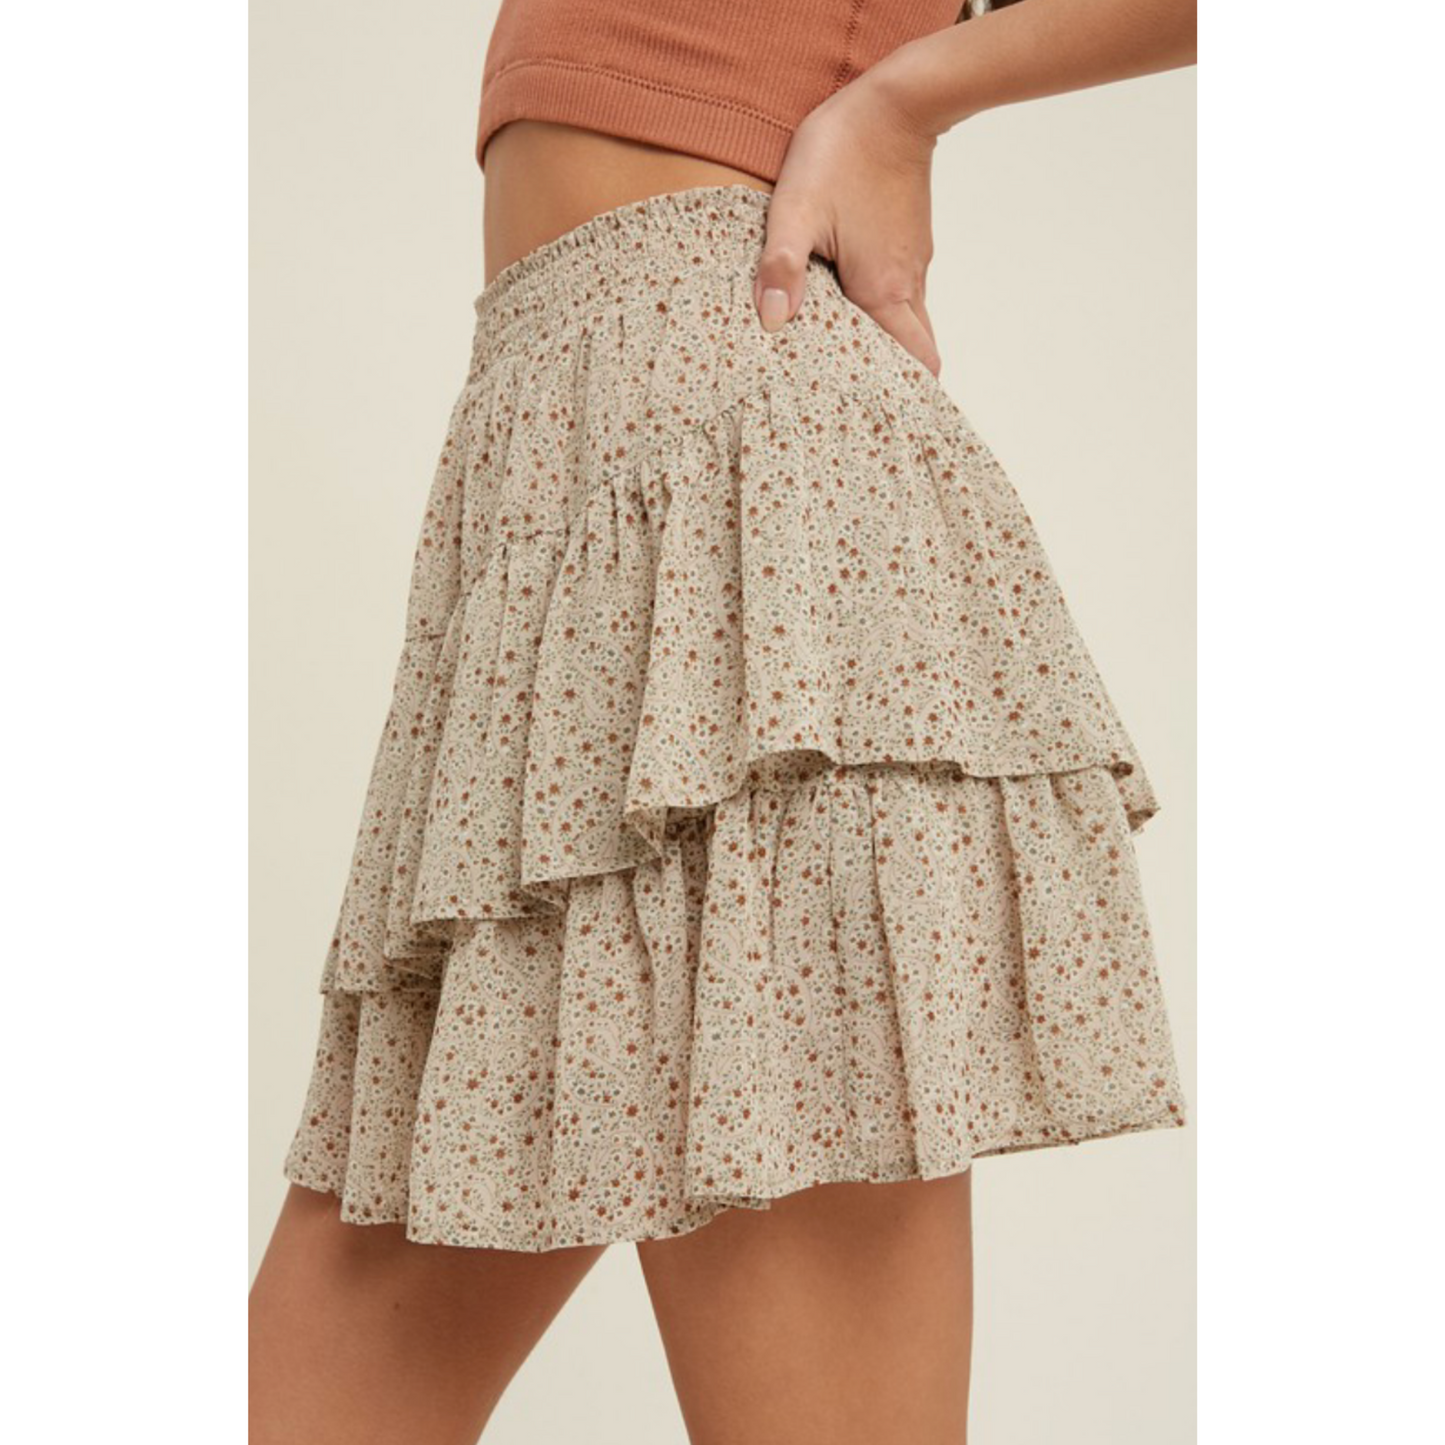 Catalina Ruffle Skirt